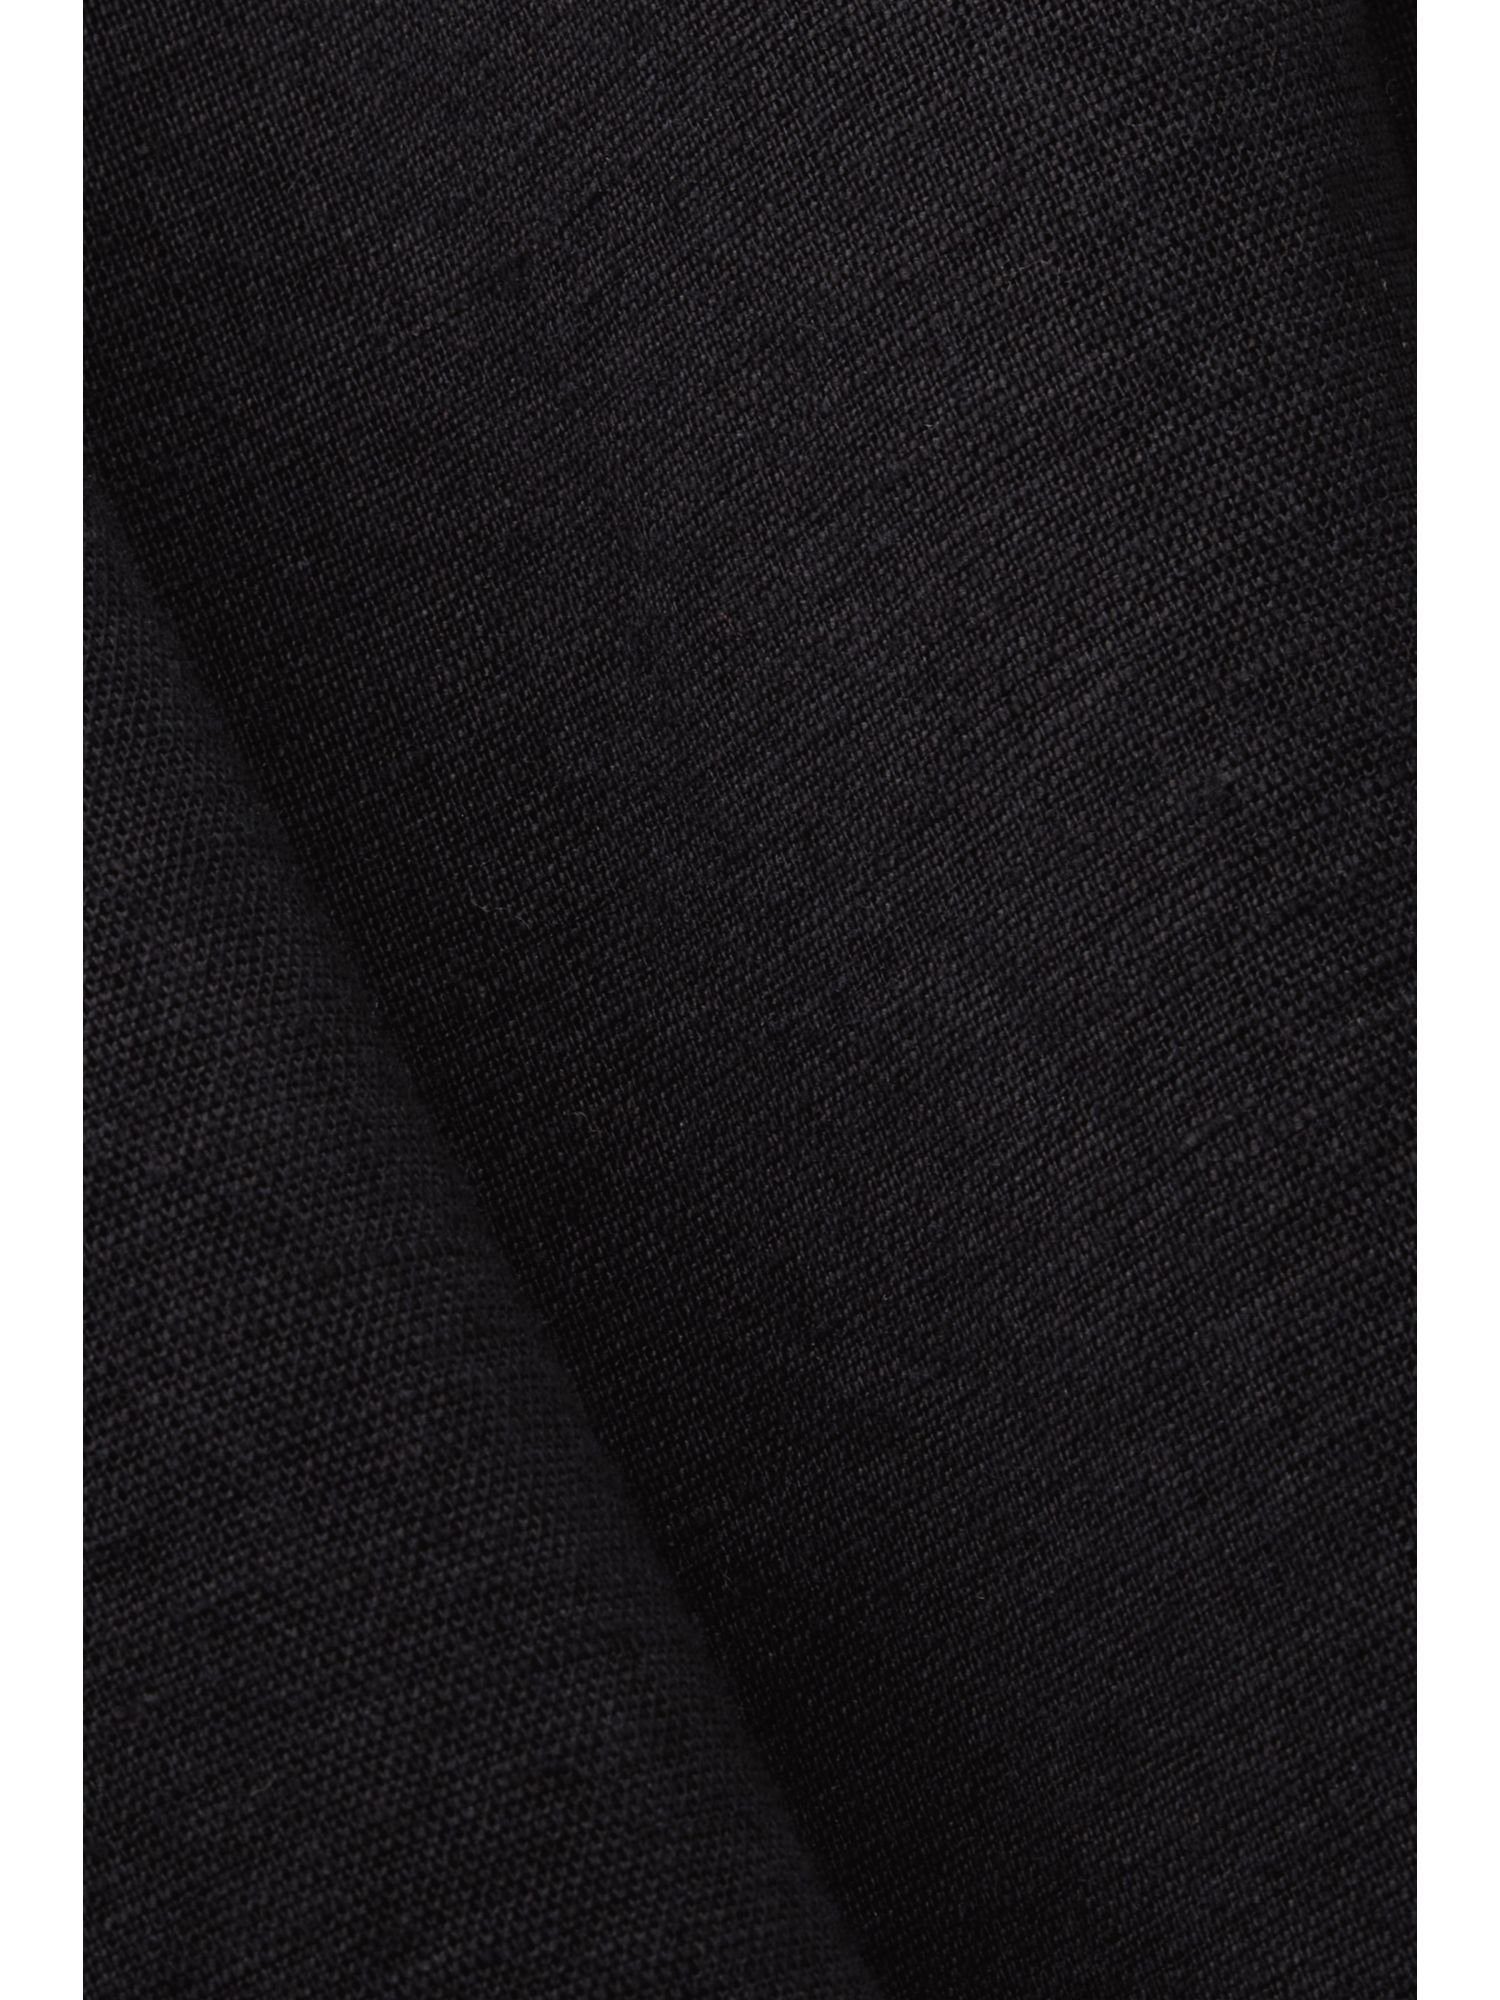 Midikleid BLACK Baumwolle-Leinen-Mix Esprit Minikleid,